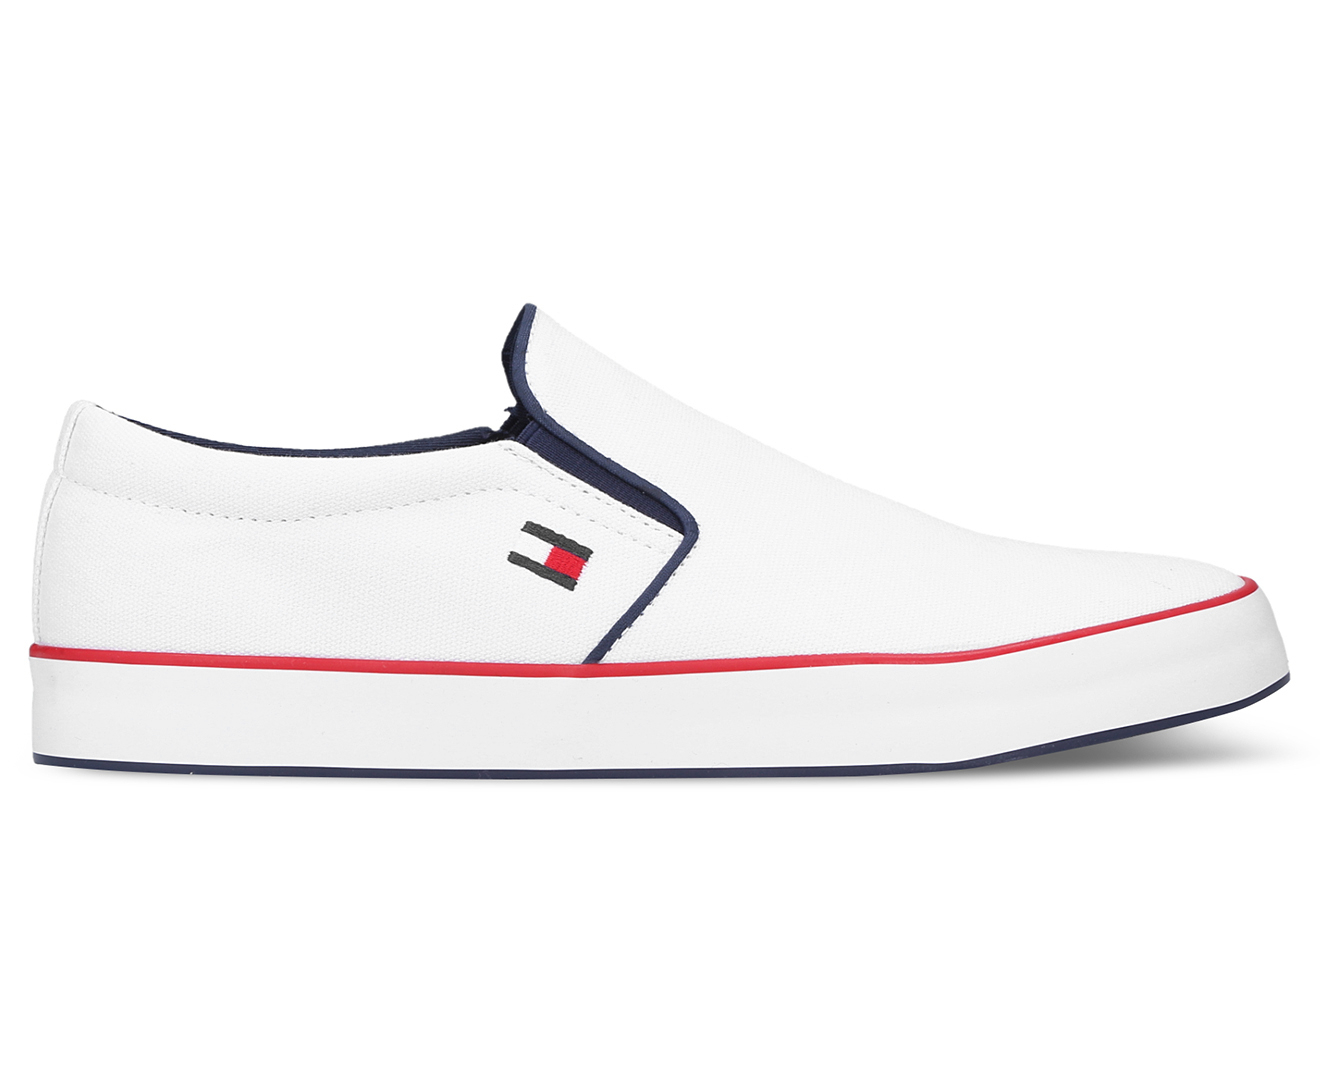 Tommy Hilfiger Men's Panco Slip-On Shoes - White | Catch.com.au